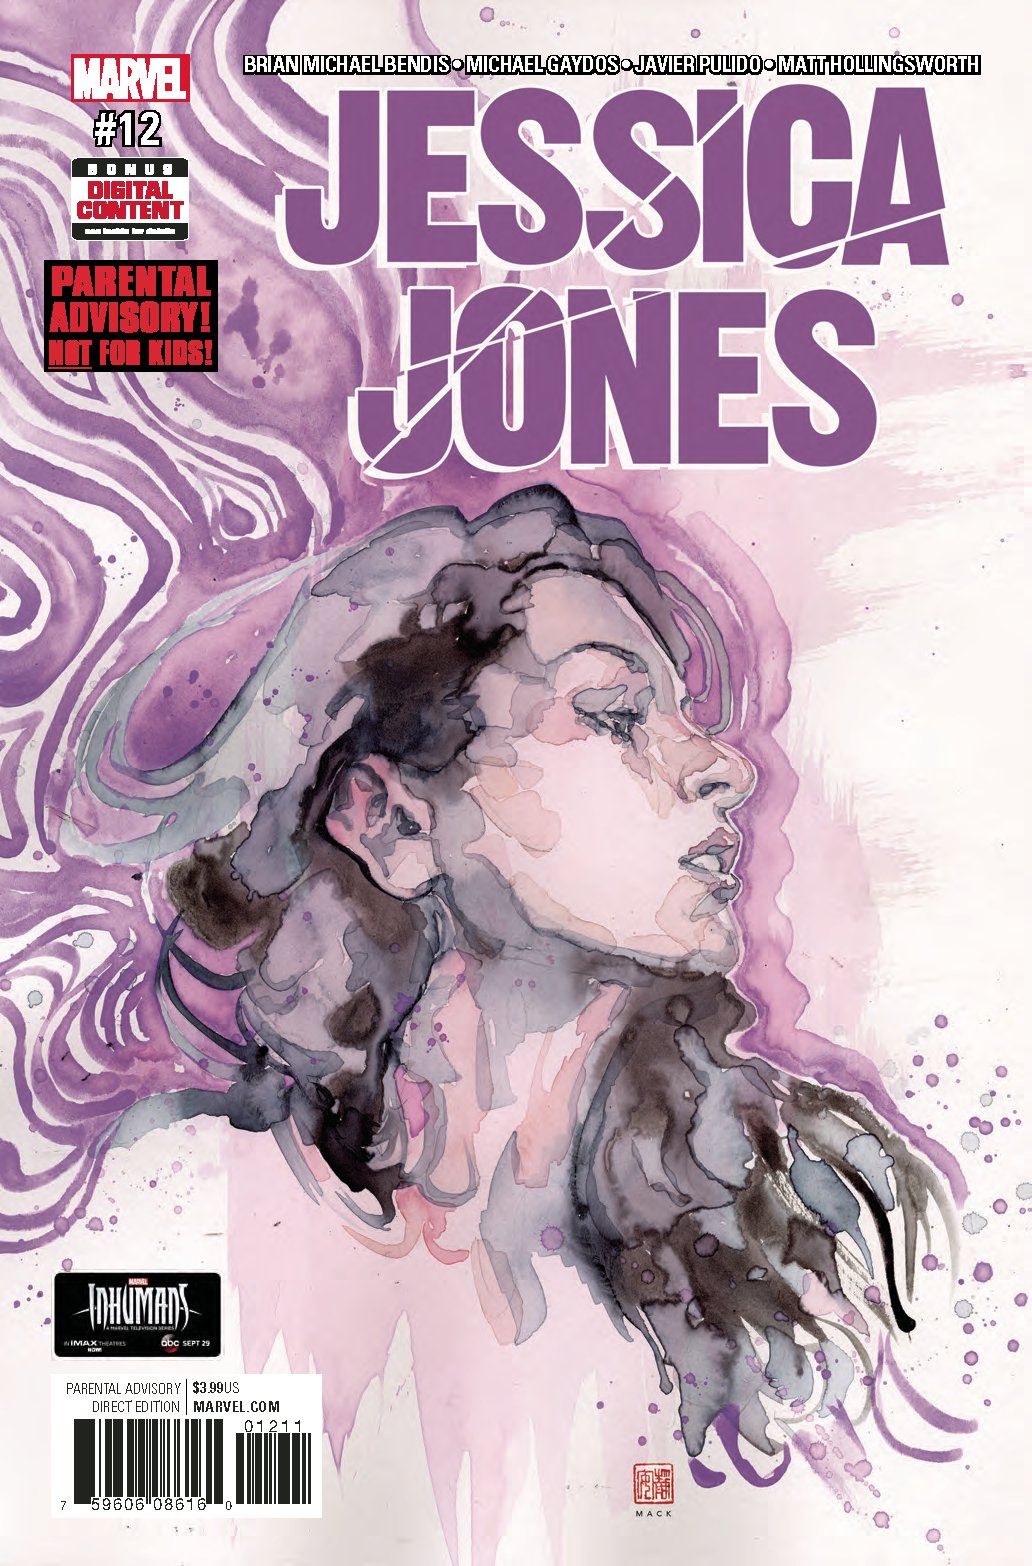 JESSICA JONES #12 COVER